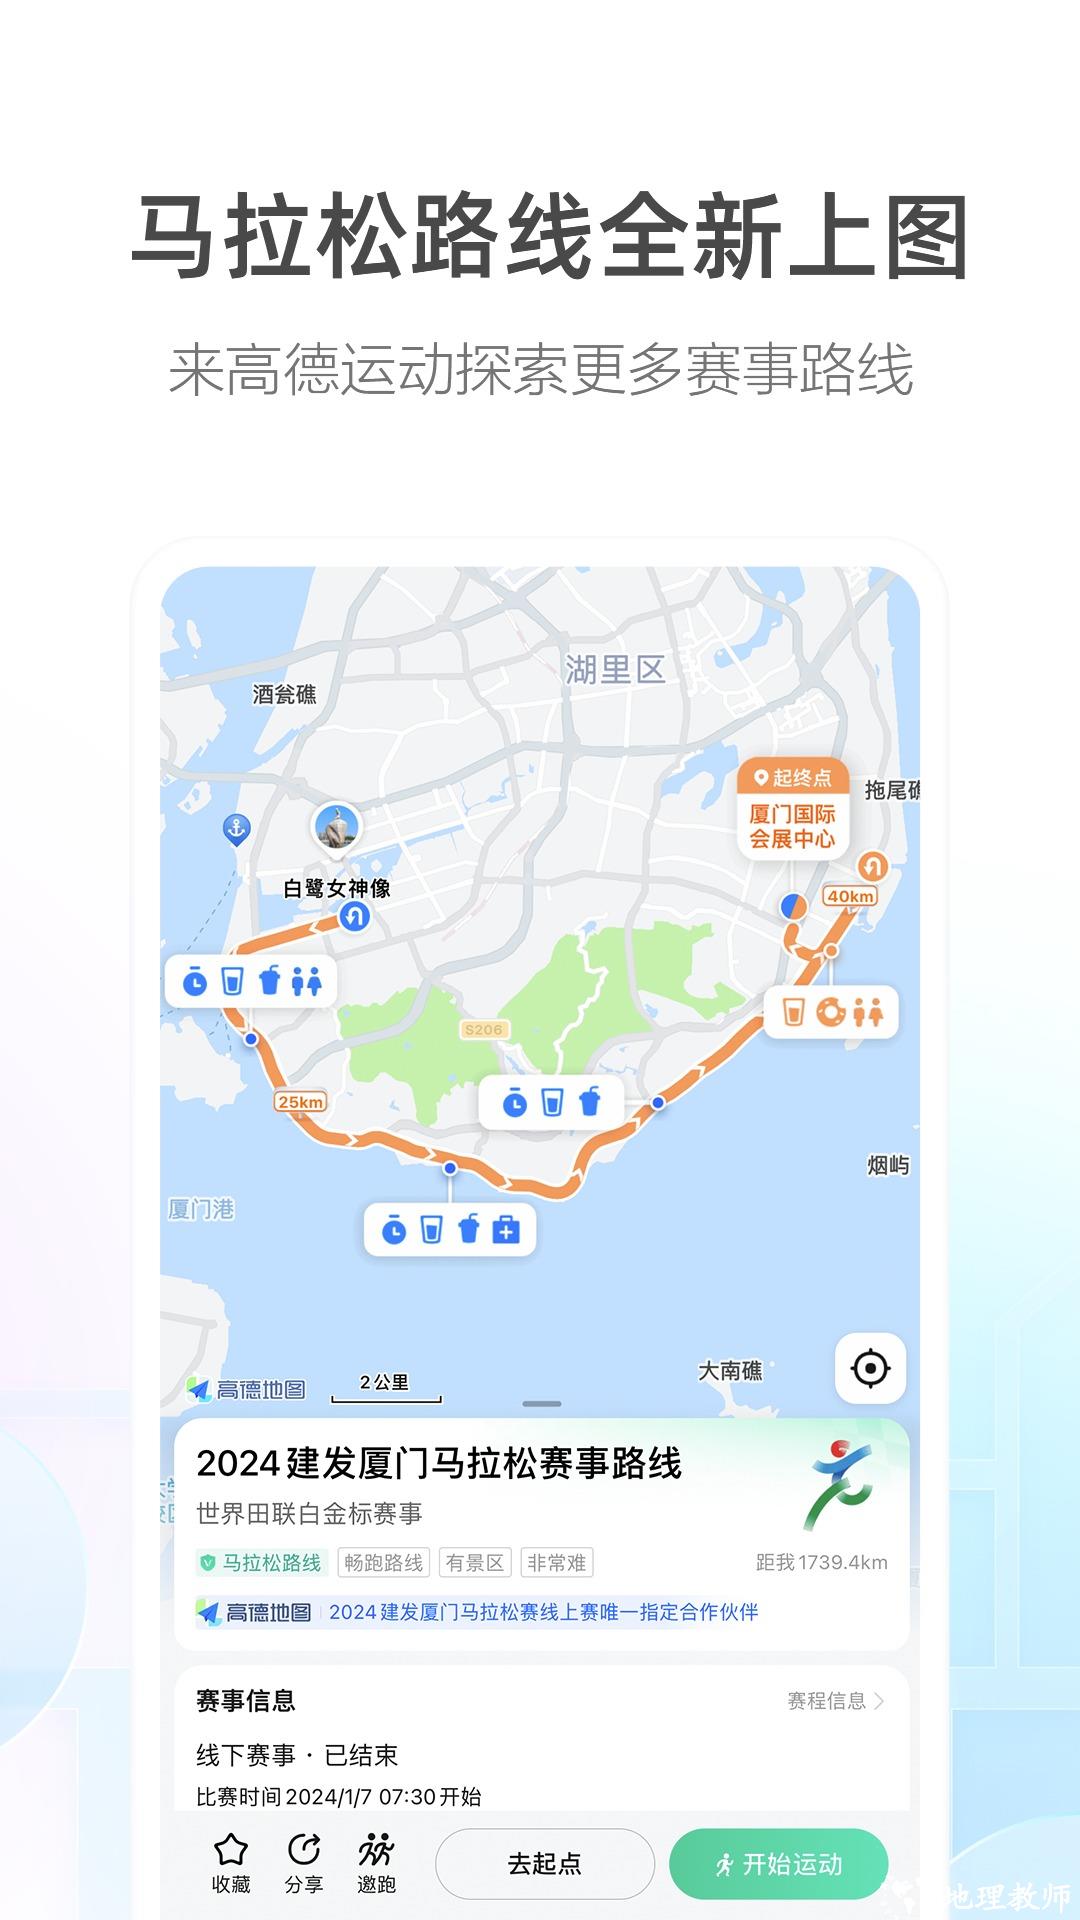 高德地图打车司机端app v13.10.0.2152 官方最新版 3